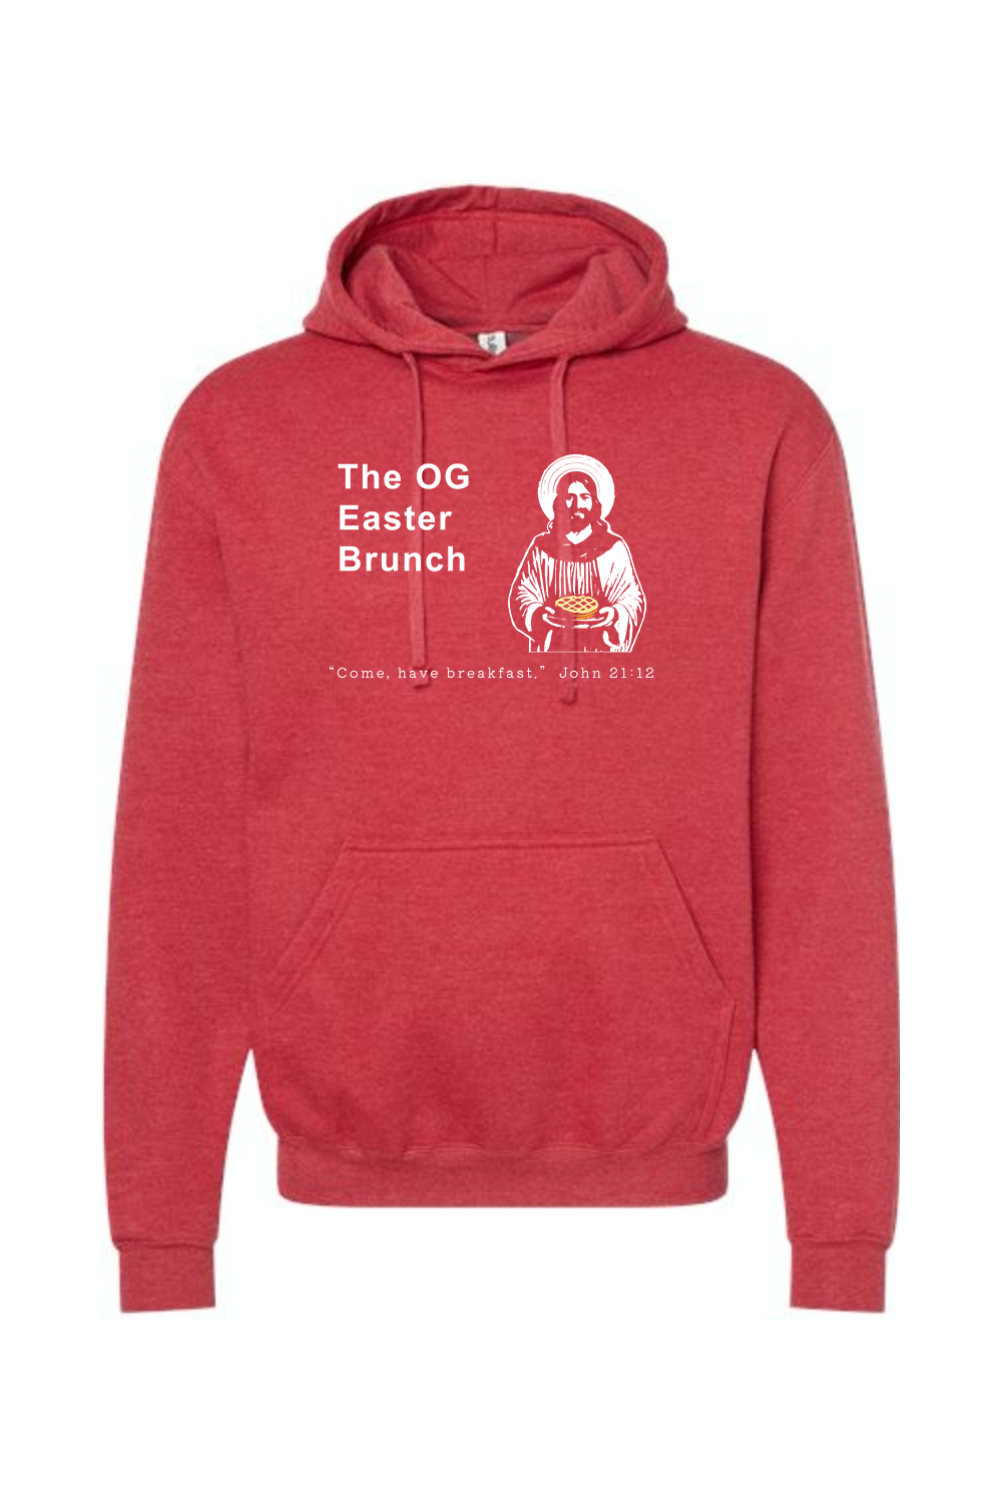 OG Easter Brunch - John 21:12 Hoodie Sweatshirt